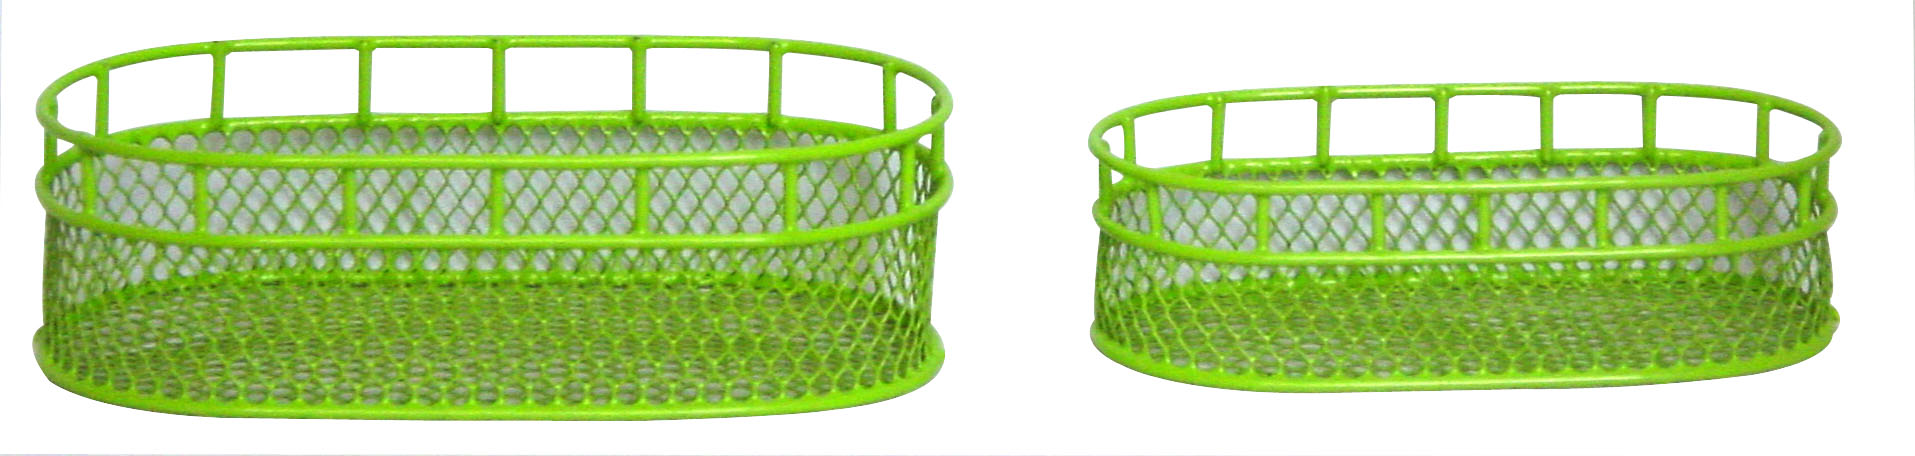 mesh basket